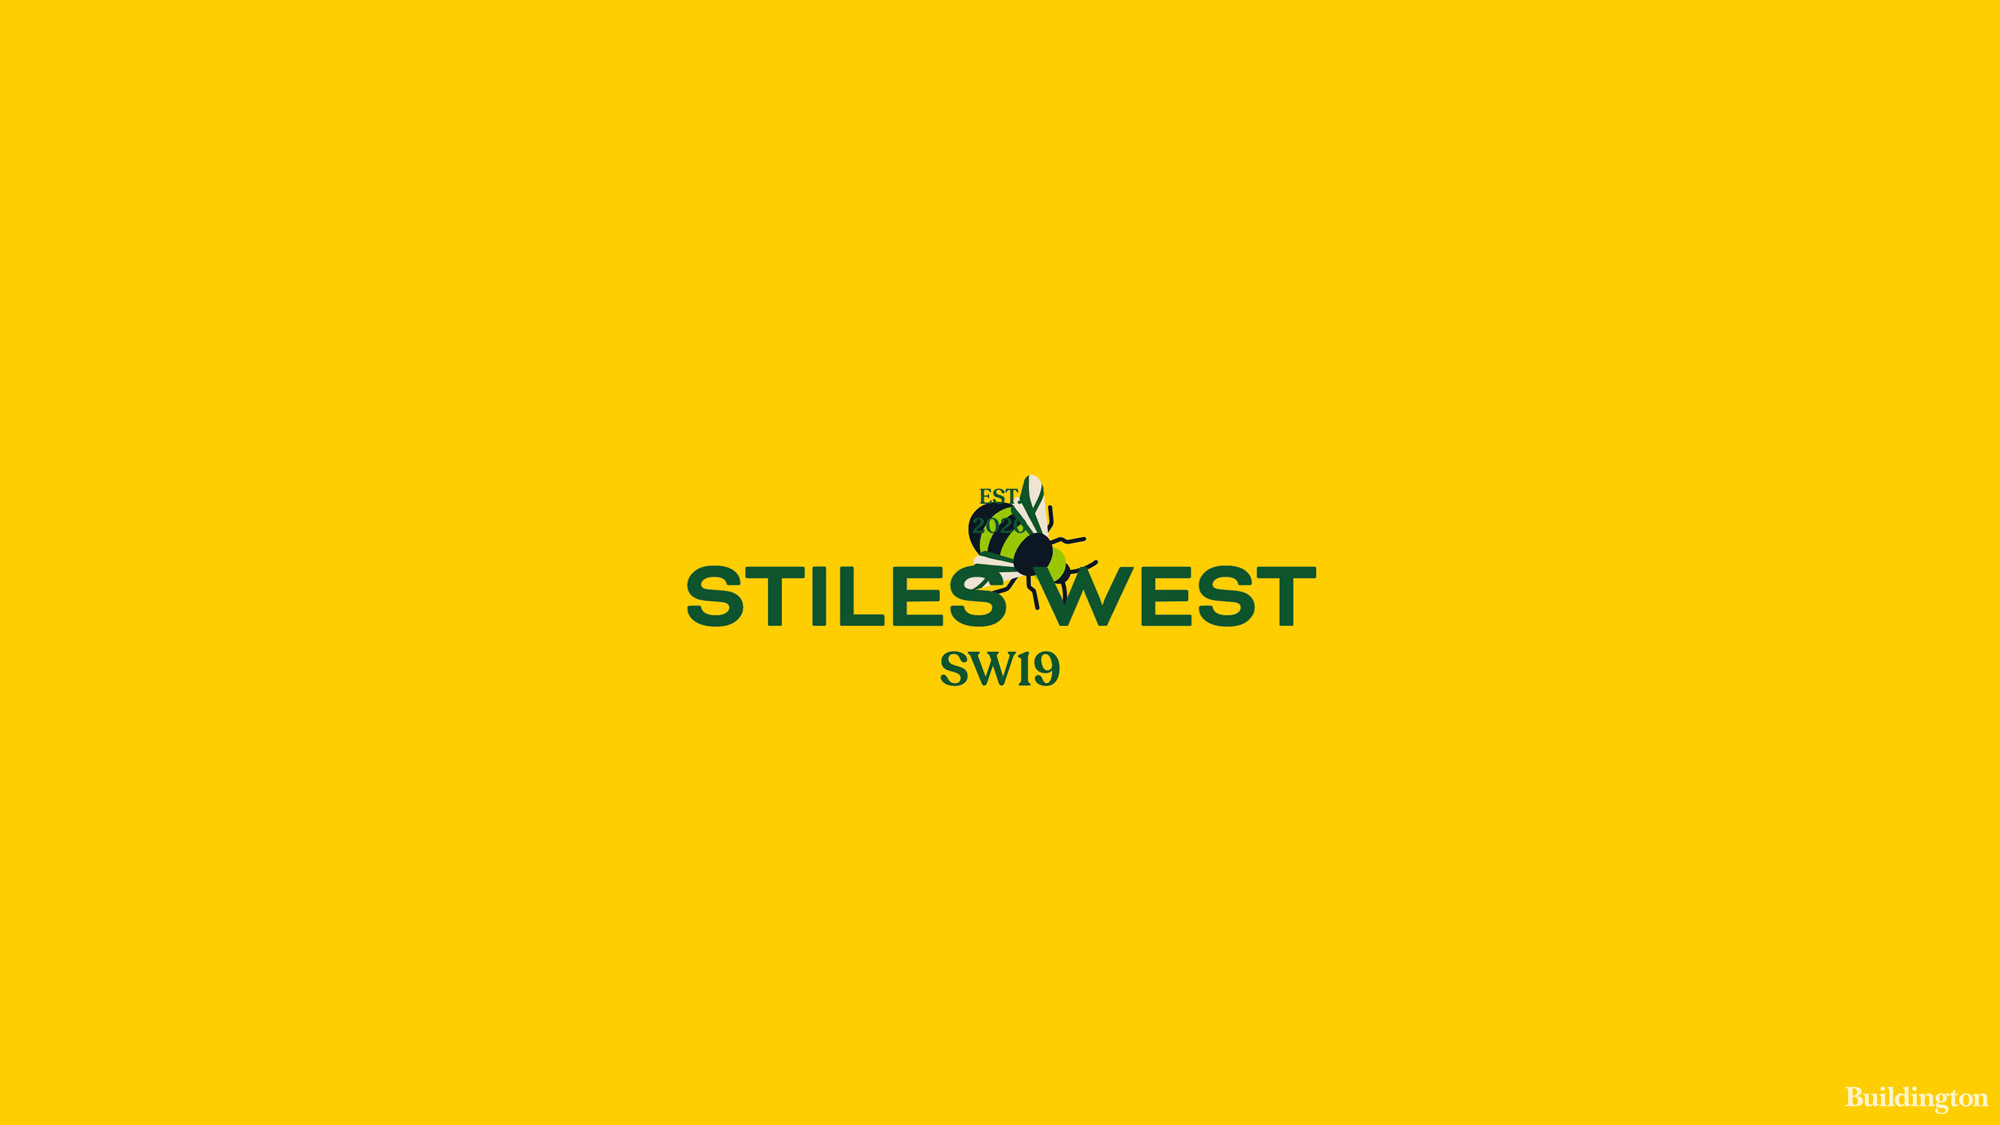 Stiles West development logo.